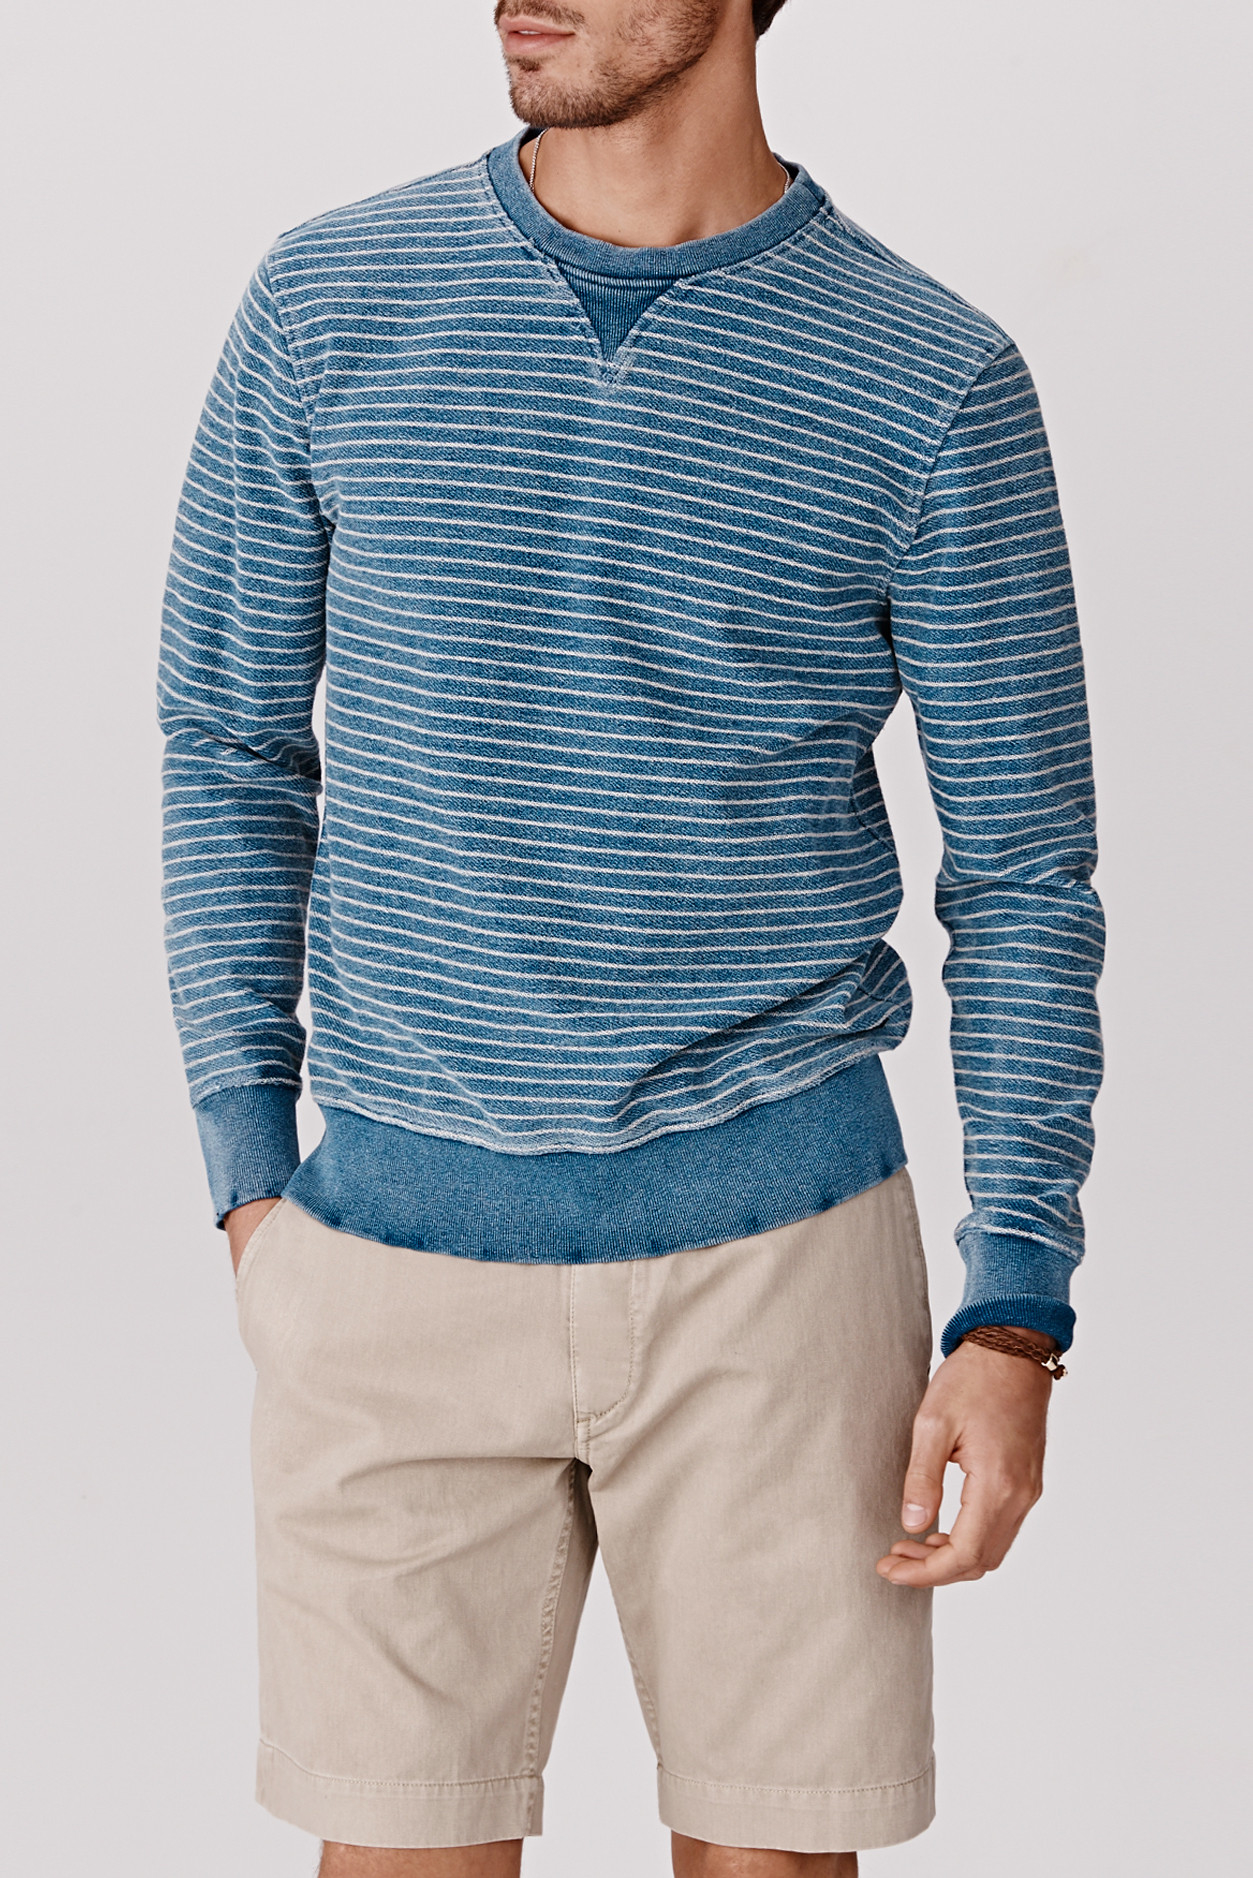 Lyst - Faherty Brand Crew Neck Sweatshirt in Blue for Men